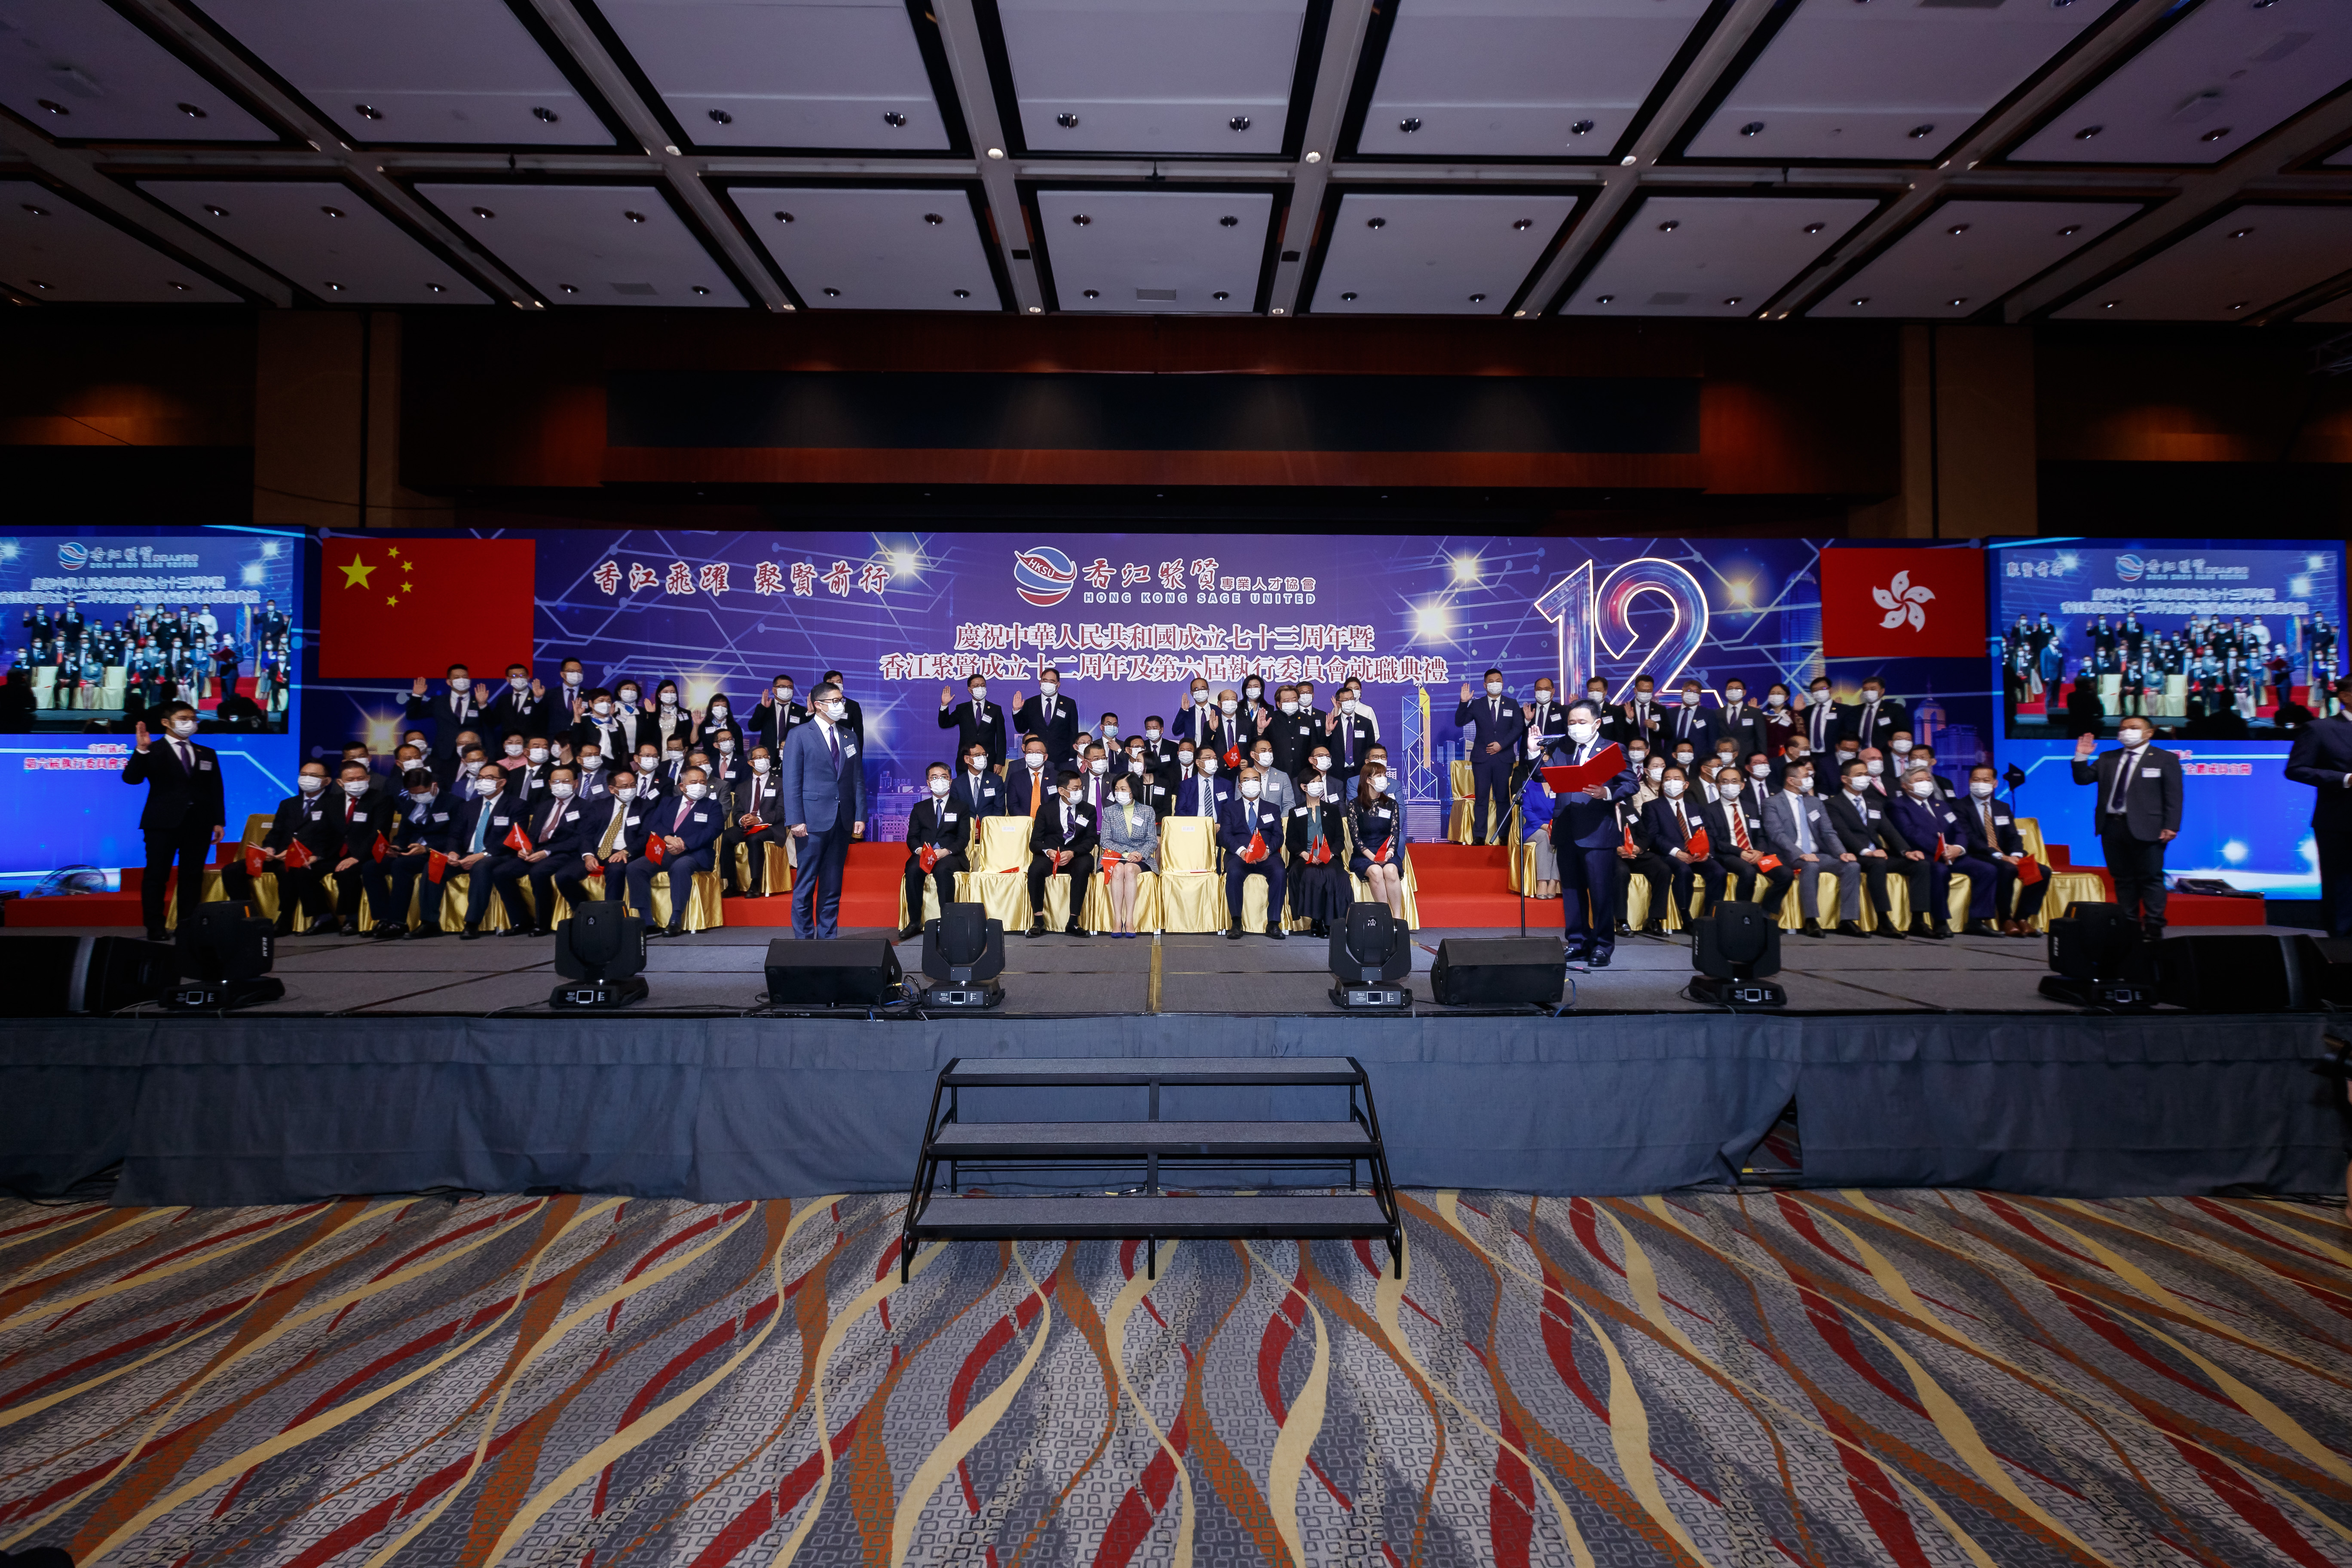 慶祝中華人民共和國成立73周年暨香江聚賢成立十二周年及第六屆執行委員會就職典禮